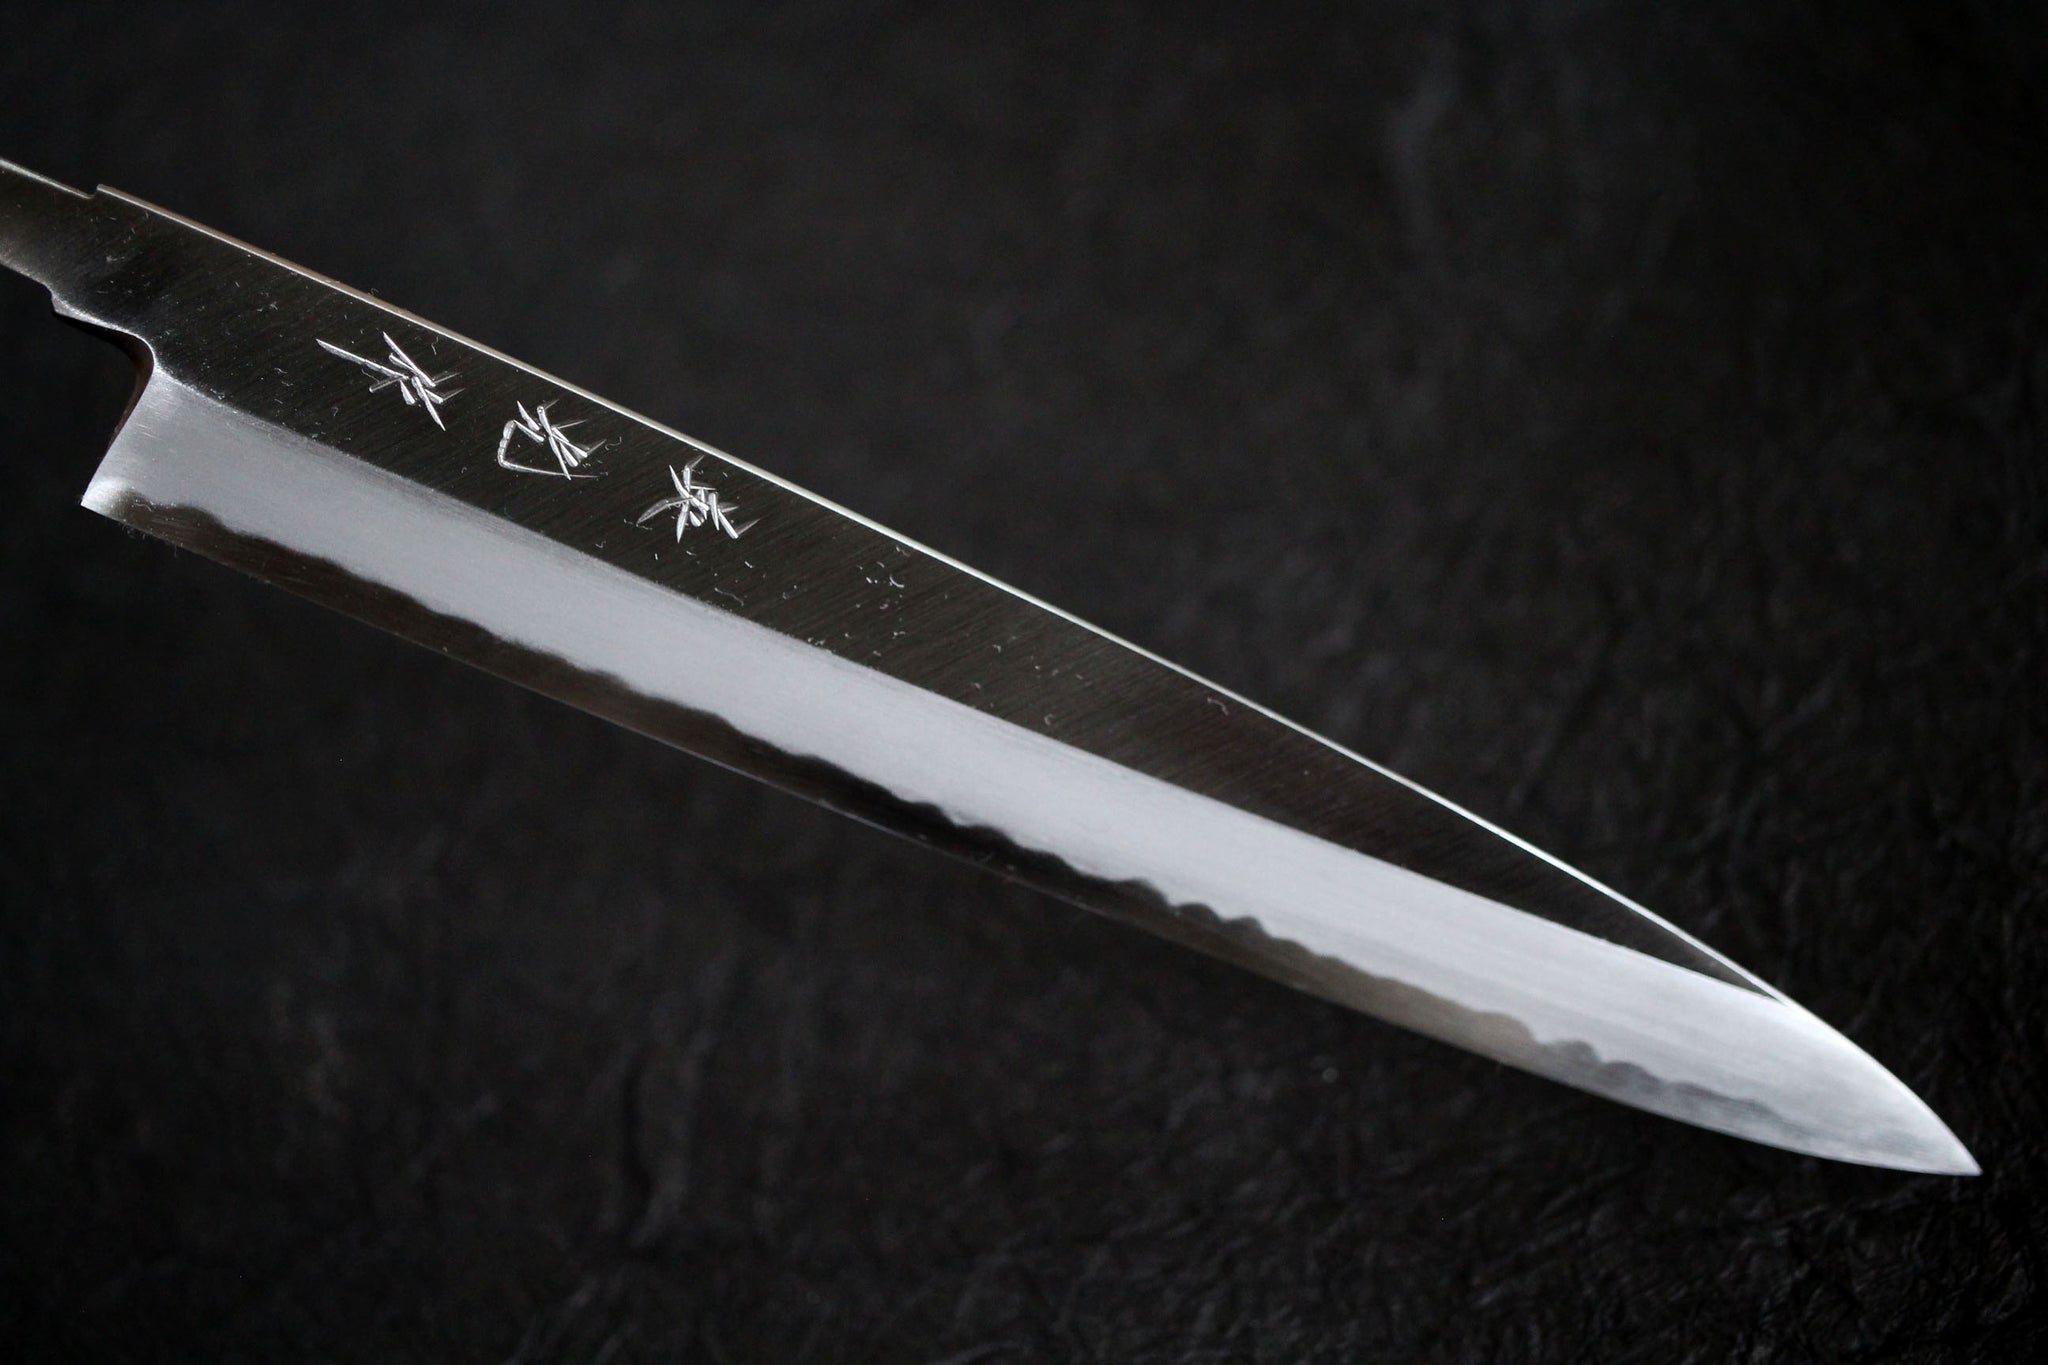 ibuki tanzo Sasaoka blank blade forged blue #2 steel Yanagiba Sashimi knife 240mm Kasumi Hamon